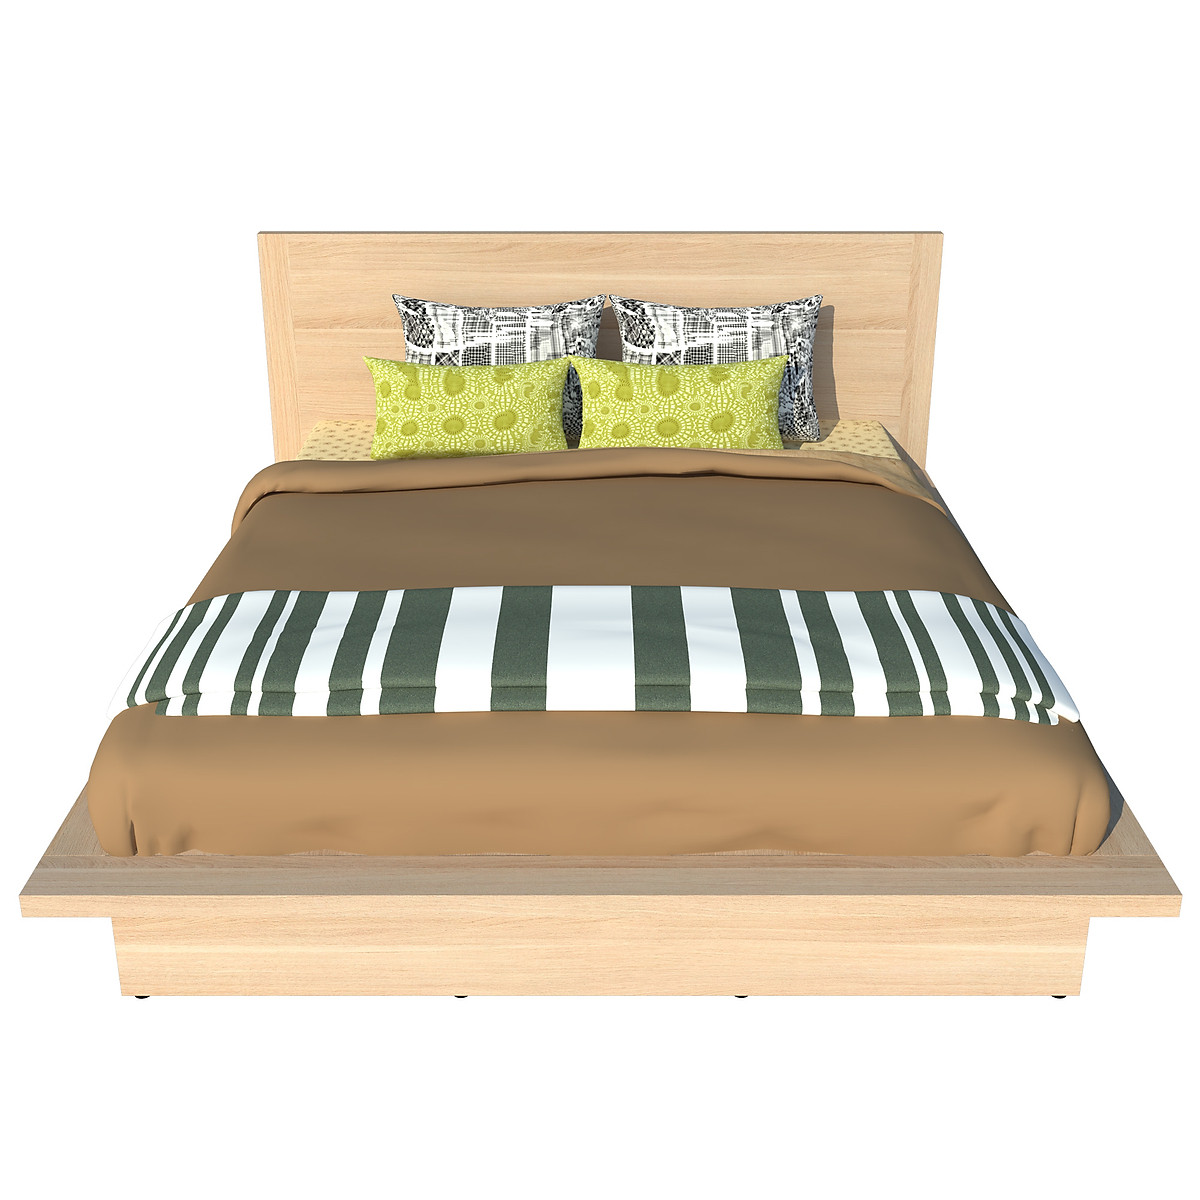 Giường ngủ cao cấp Tundo màu vàng sồi 160cm x 200cm